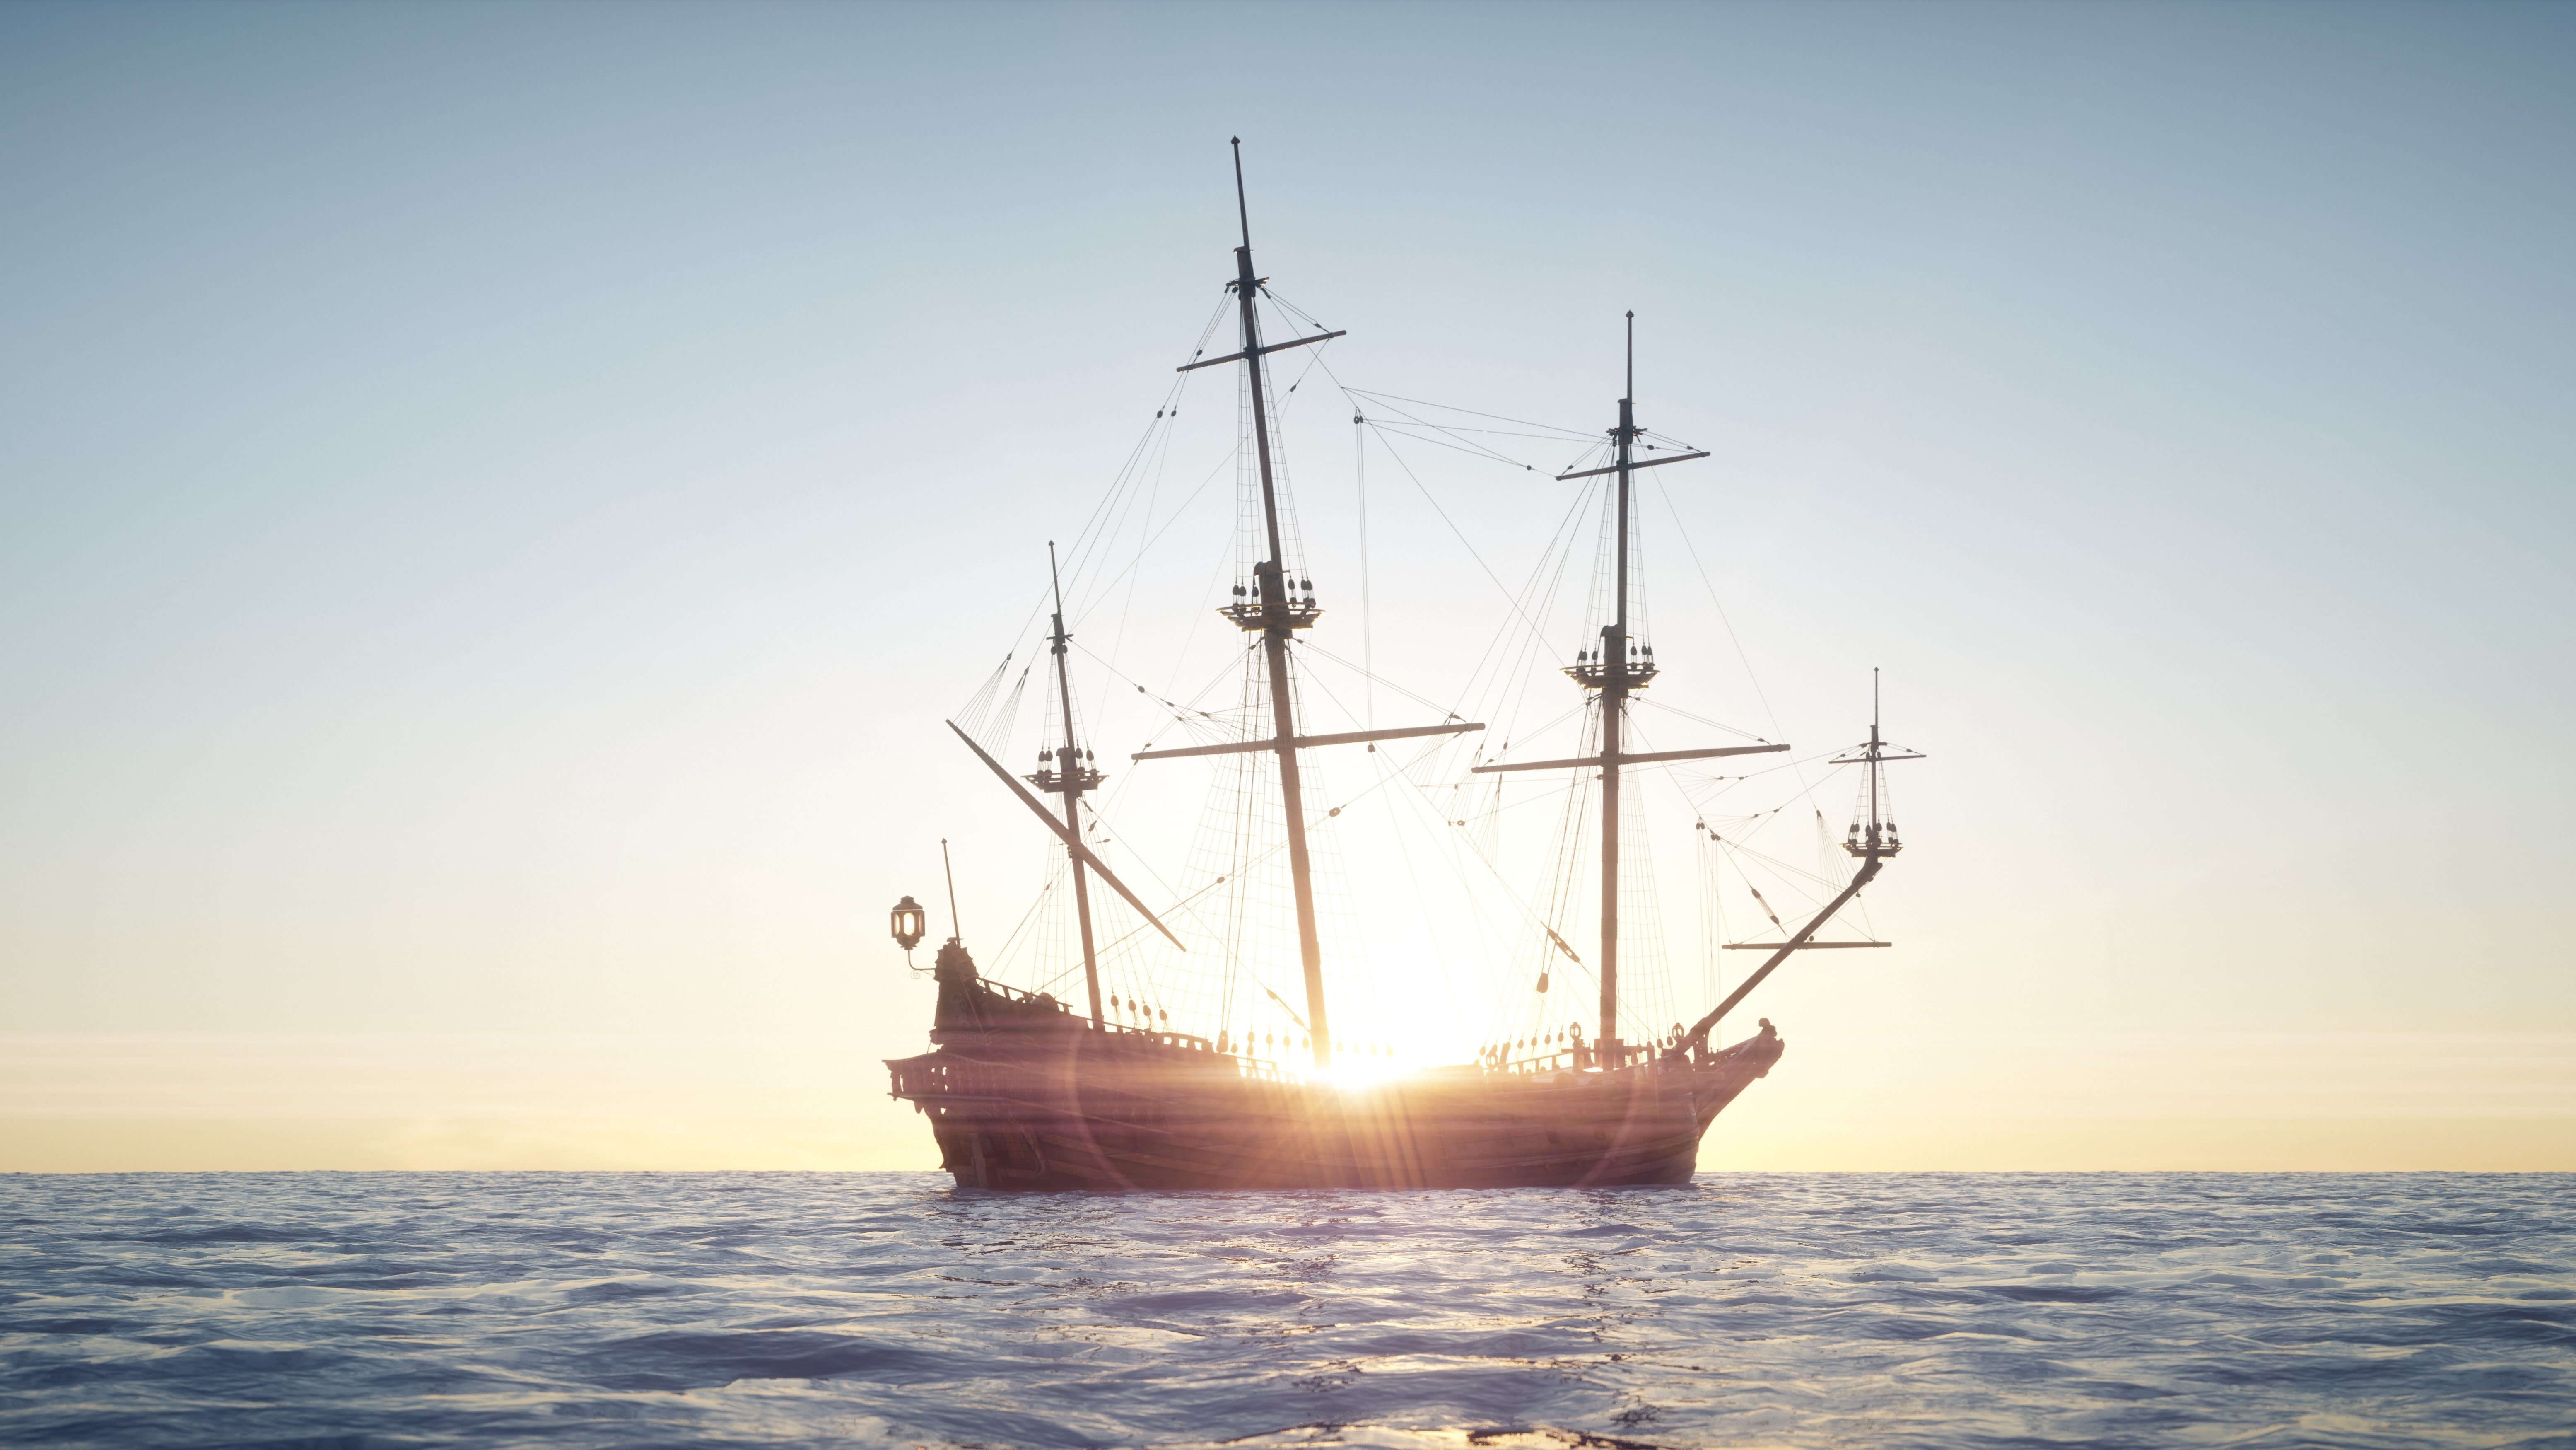 Pirate ship sailing against the sunset similar to Blackbeard's ship, Queen Anne's Revenge